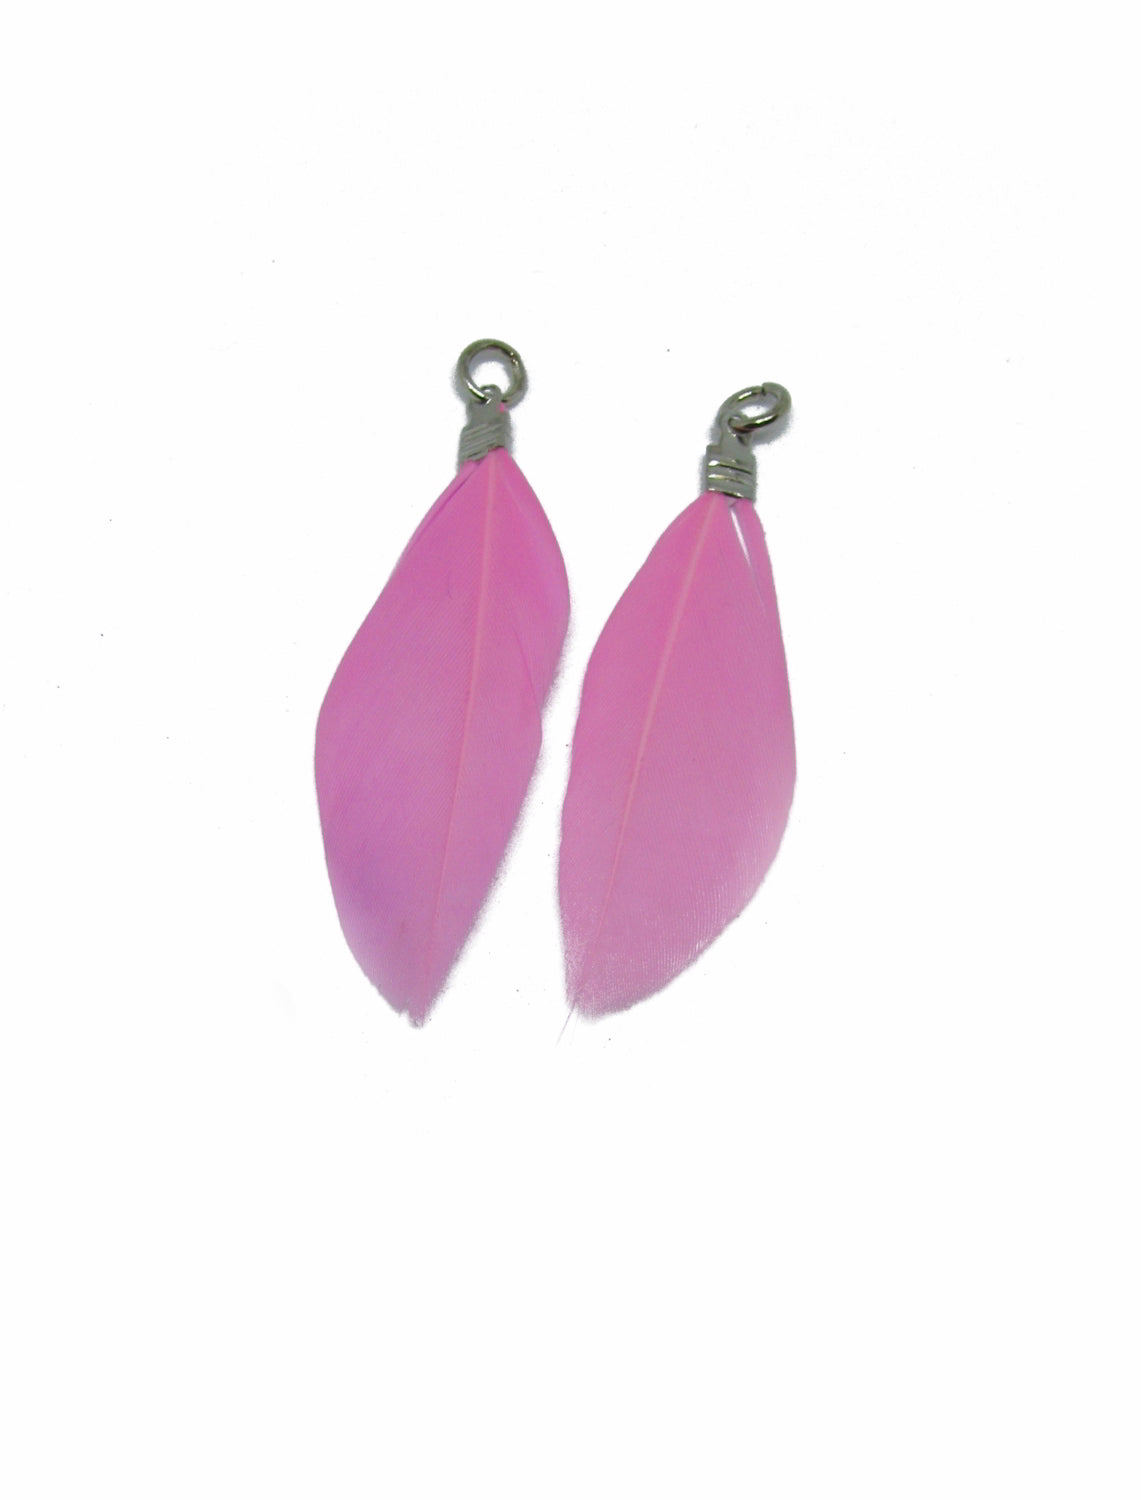 4 Anhänger echte Feder rosa,ca 4,8 bis 5,3 cm, Perlen basteln Indianer, Perlen